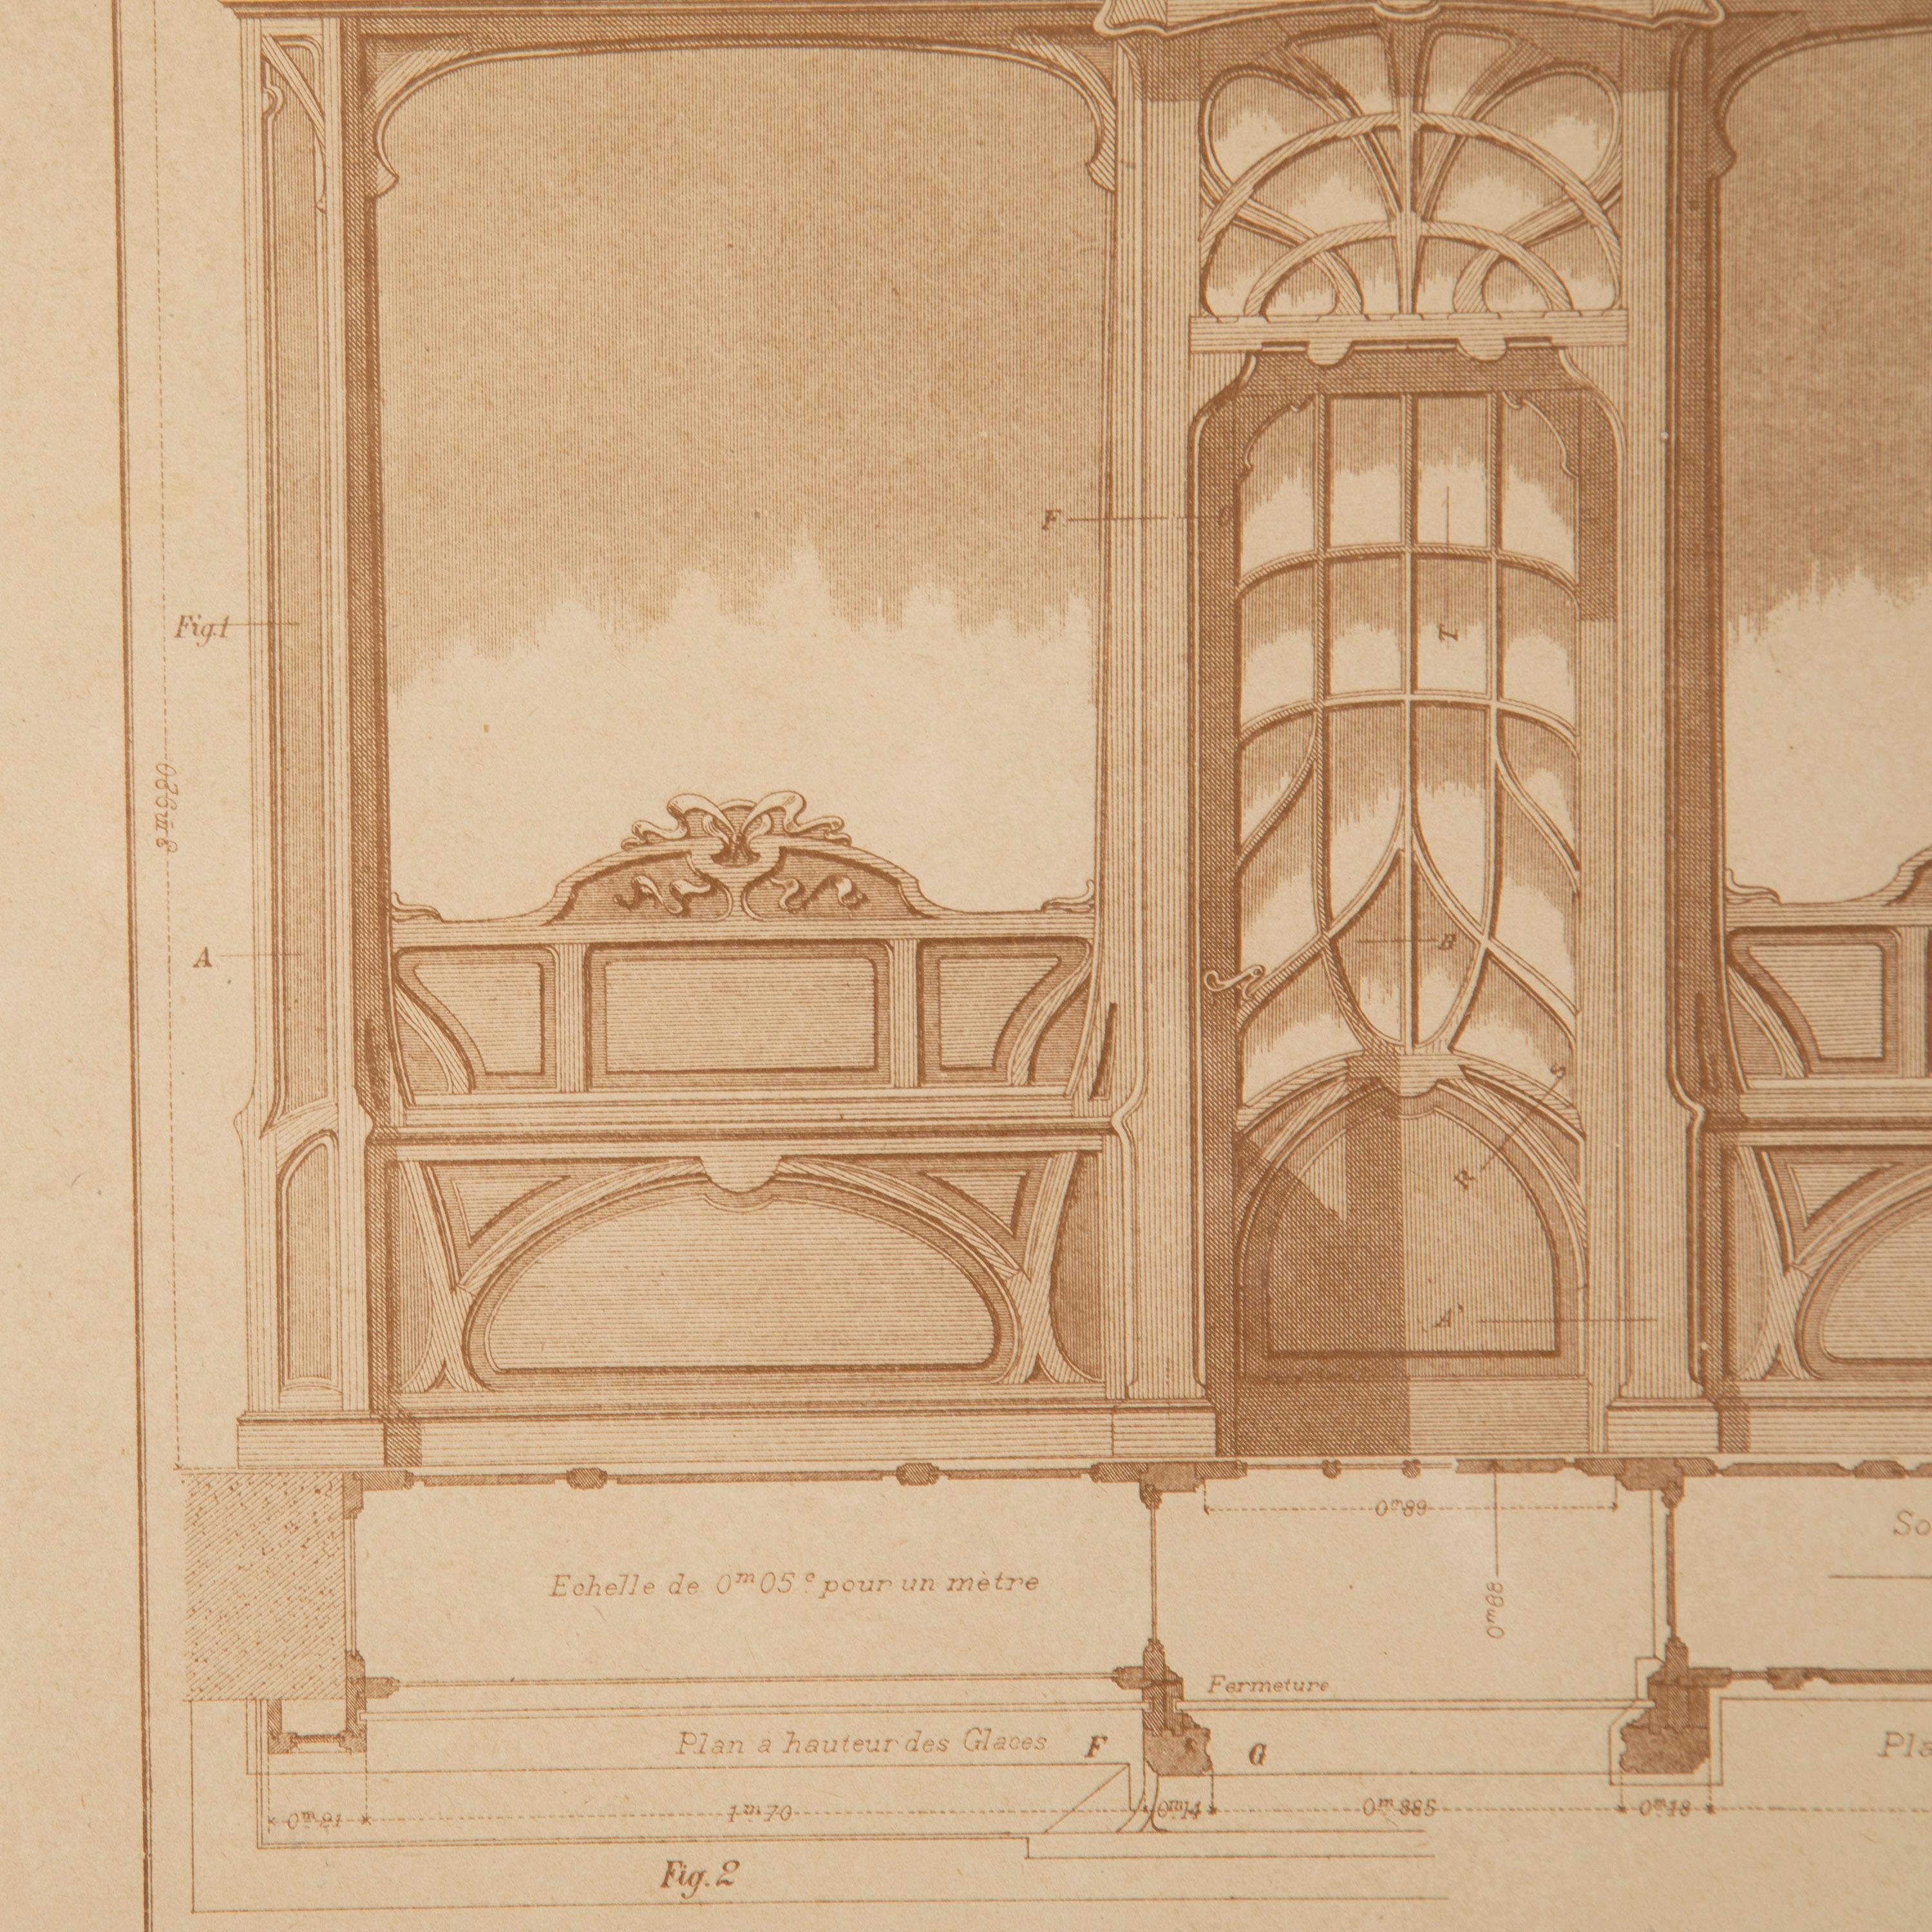 Fantastischer Satz von vier französischen Architekturstichen des späten 19. Jahrhunderts.

Bei diesen ungewöhnlichen und sehr dekorativen Stichen handelt es sich um architektonische Zeichnungen von Schaufenster-/Fassadenentwürfen. Sie sind von 